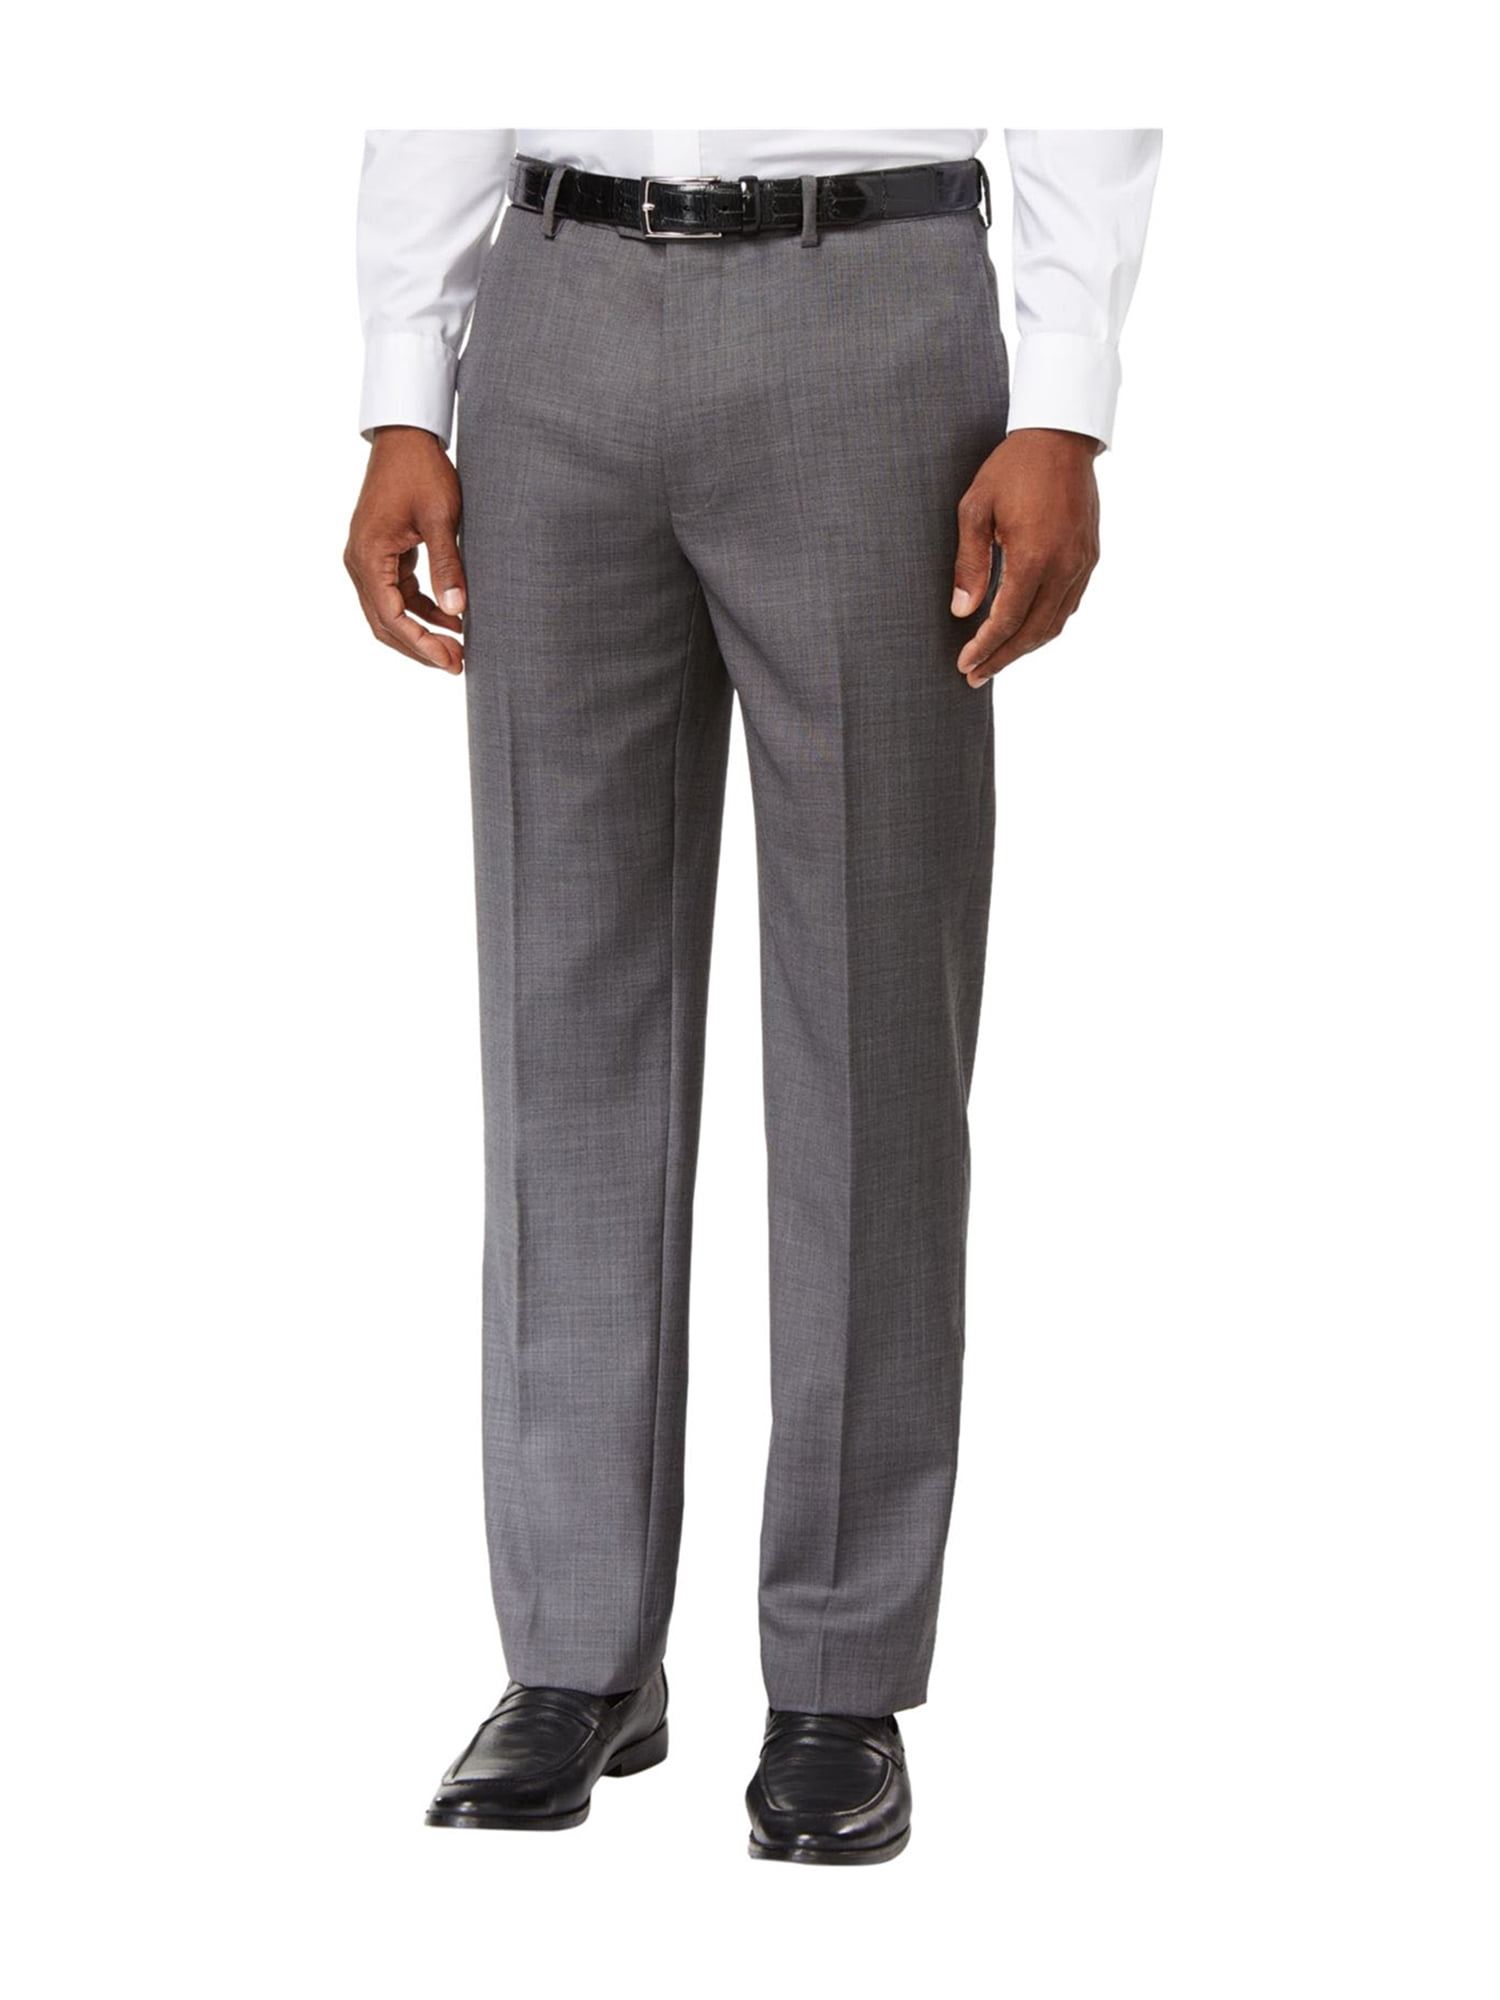 Tommy Hilfiger Mens Modern-Fit Dress Pants Slacks gray 42x30 | Walmart ...